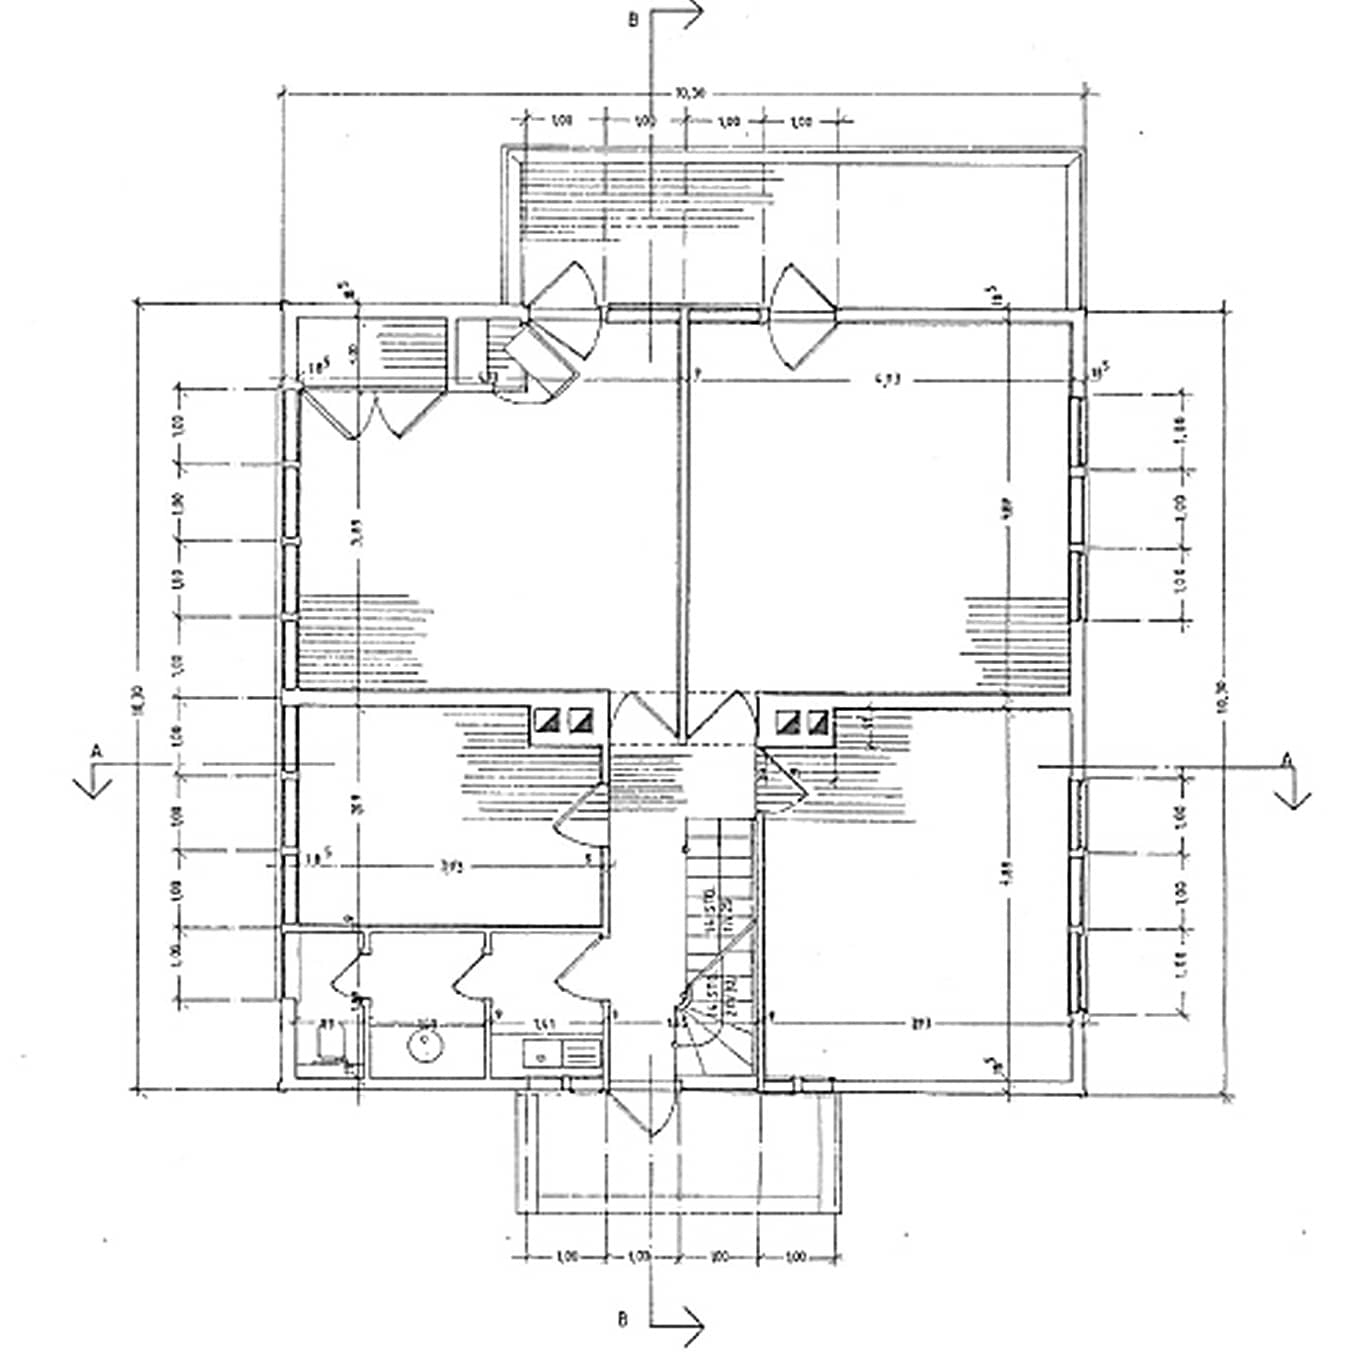 Plan des Neufert Hauses - Grundriss Obergeschoss, Weimar